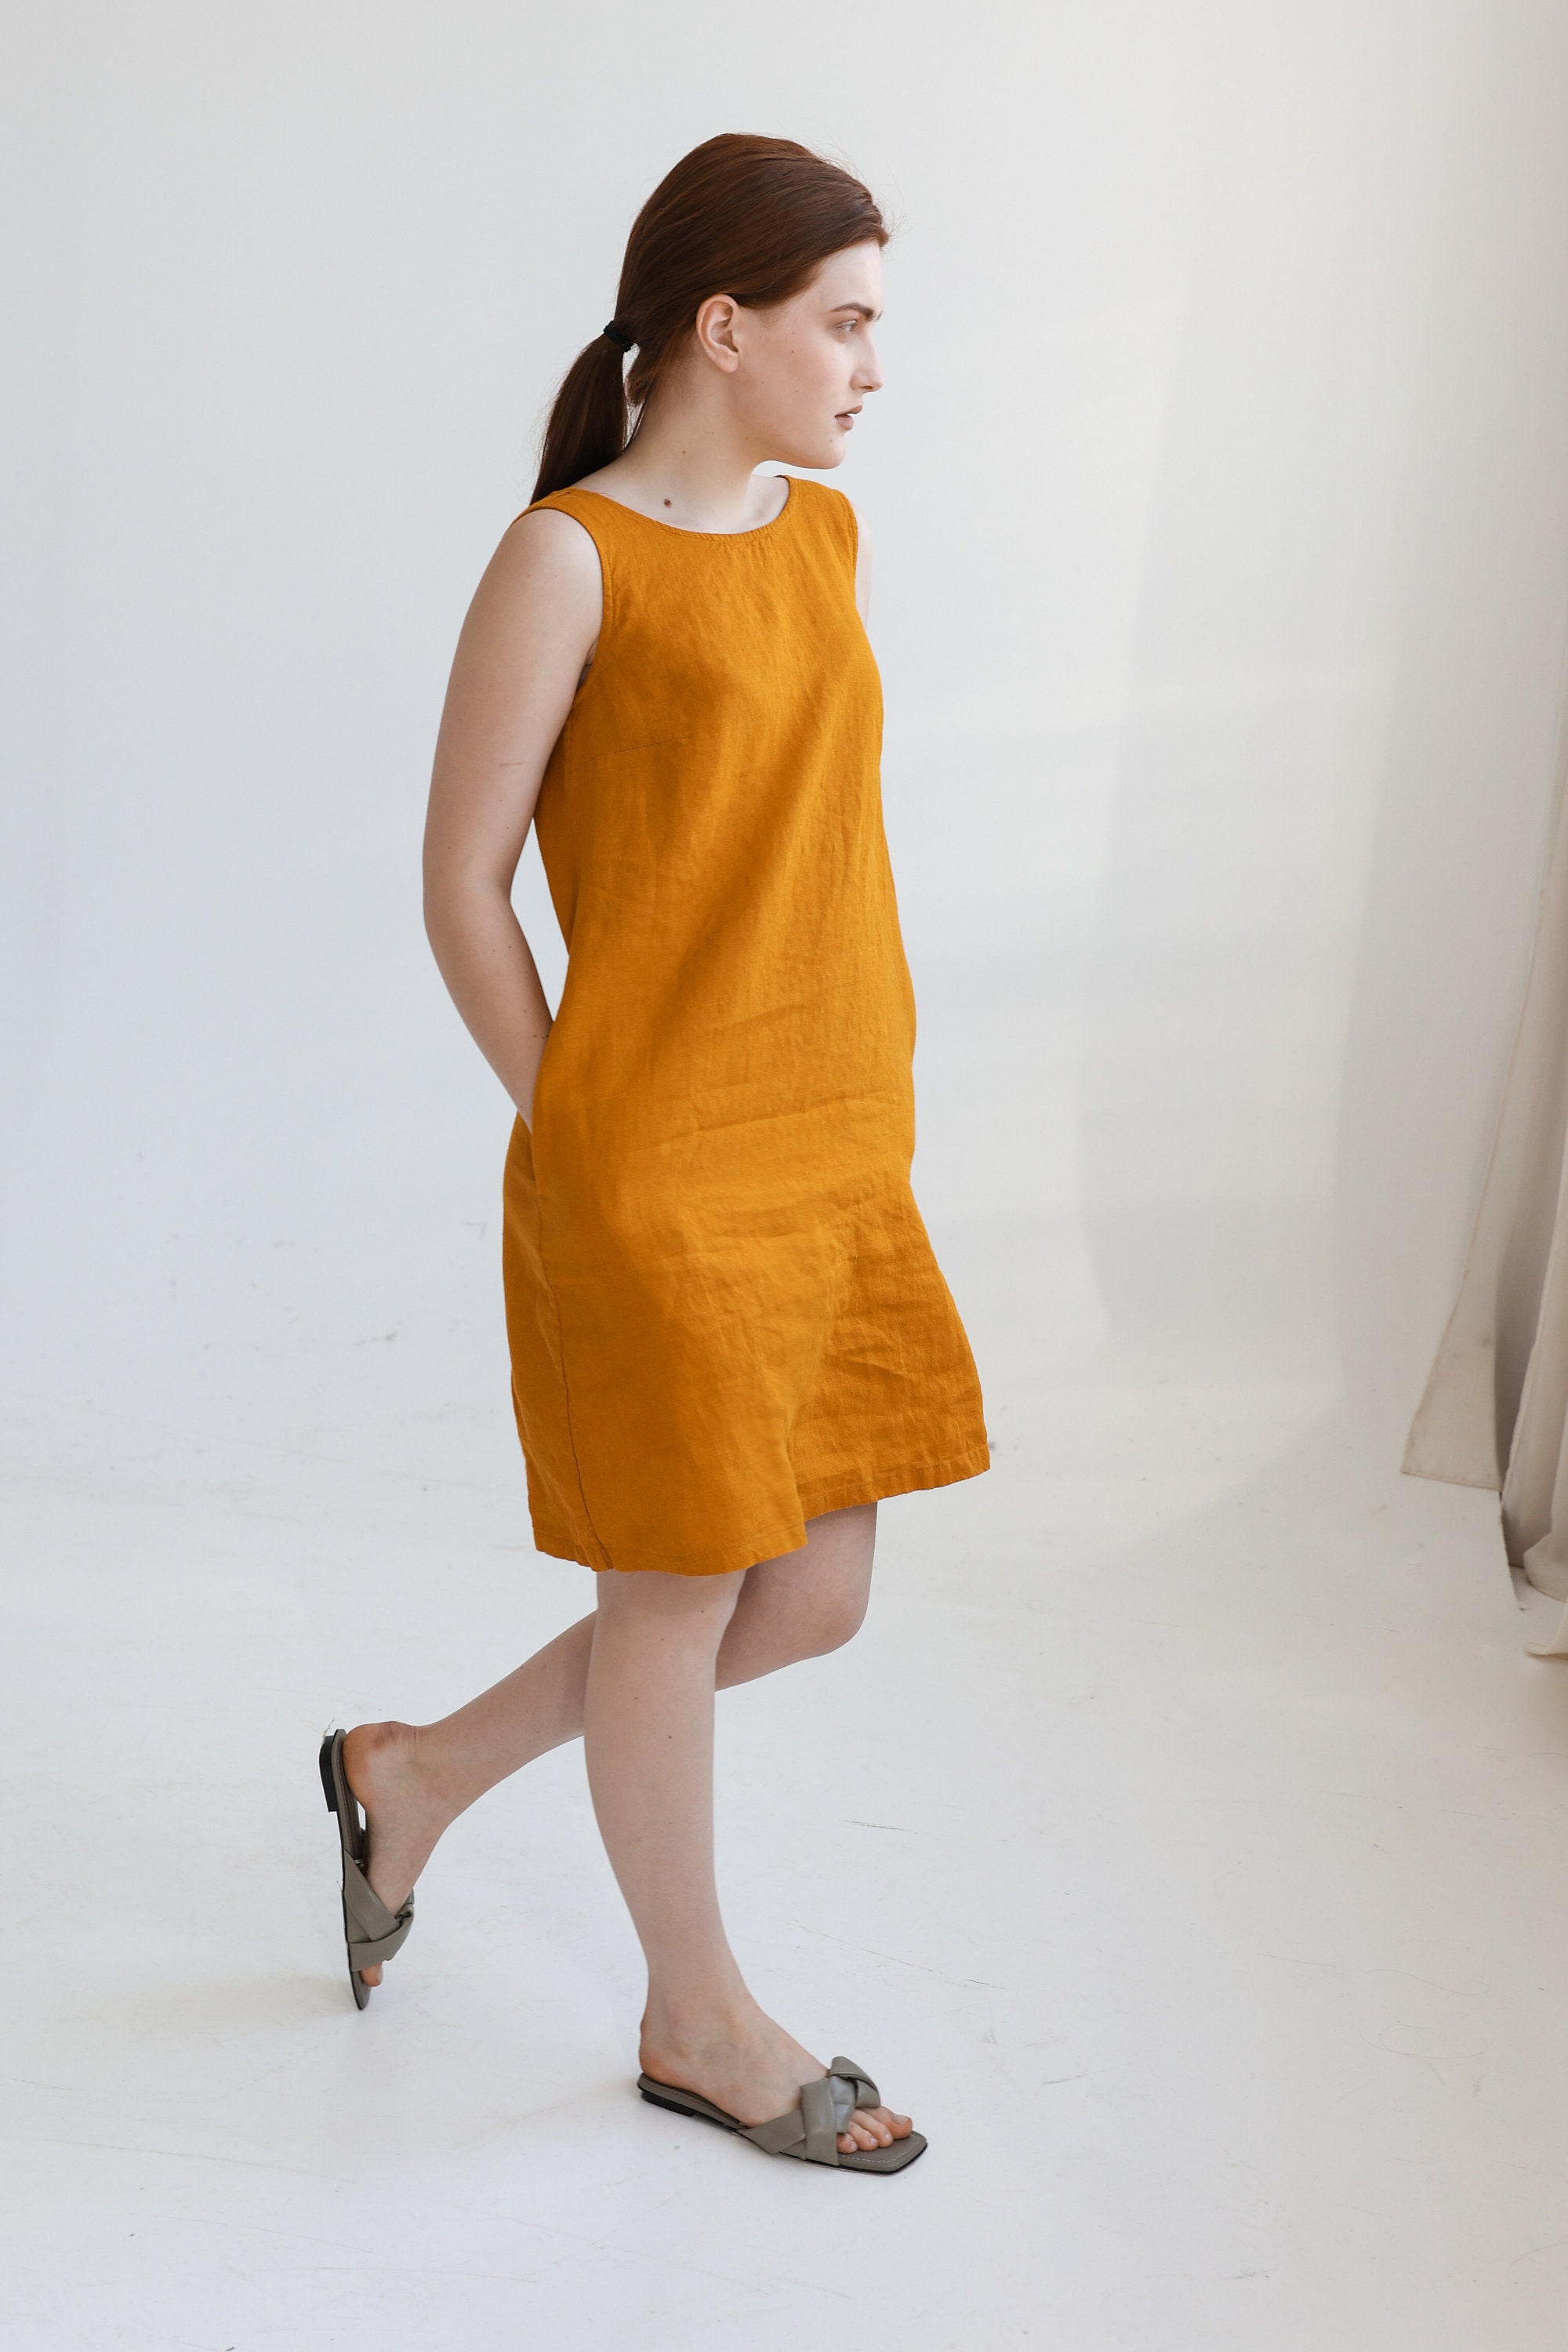 Sleeveless Mini Linen Dress Summer Dress Beach Linen Dress | Etsy